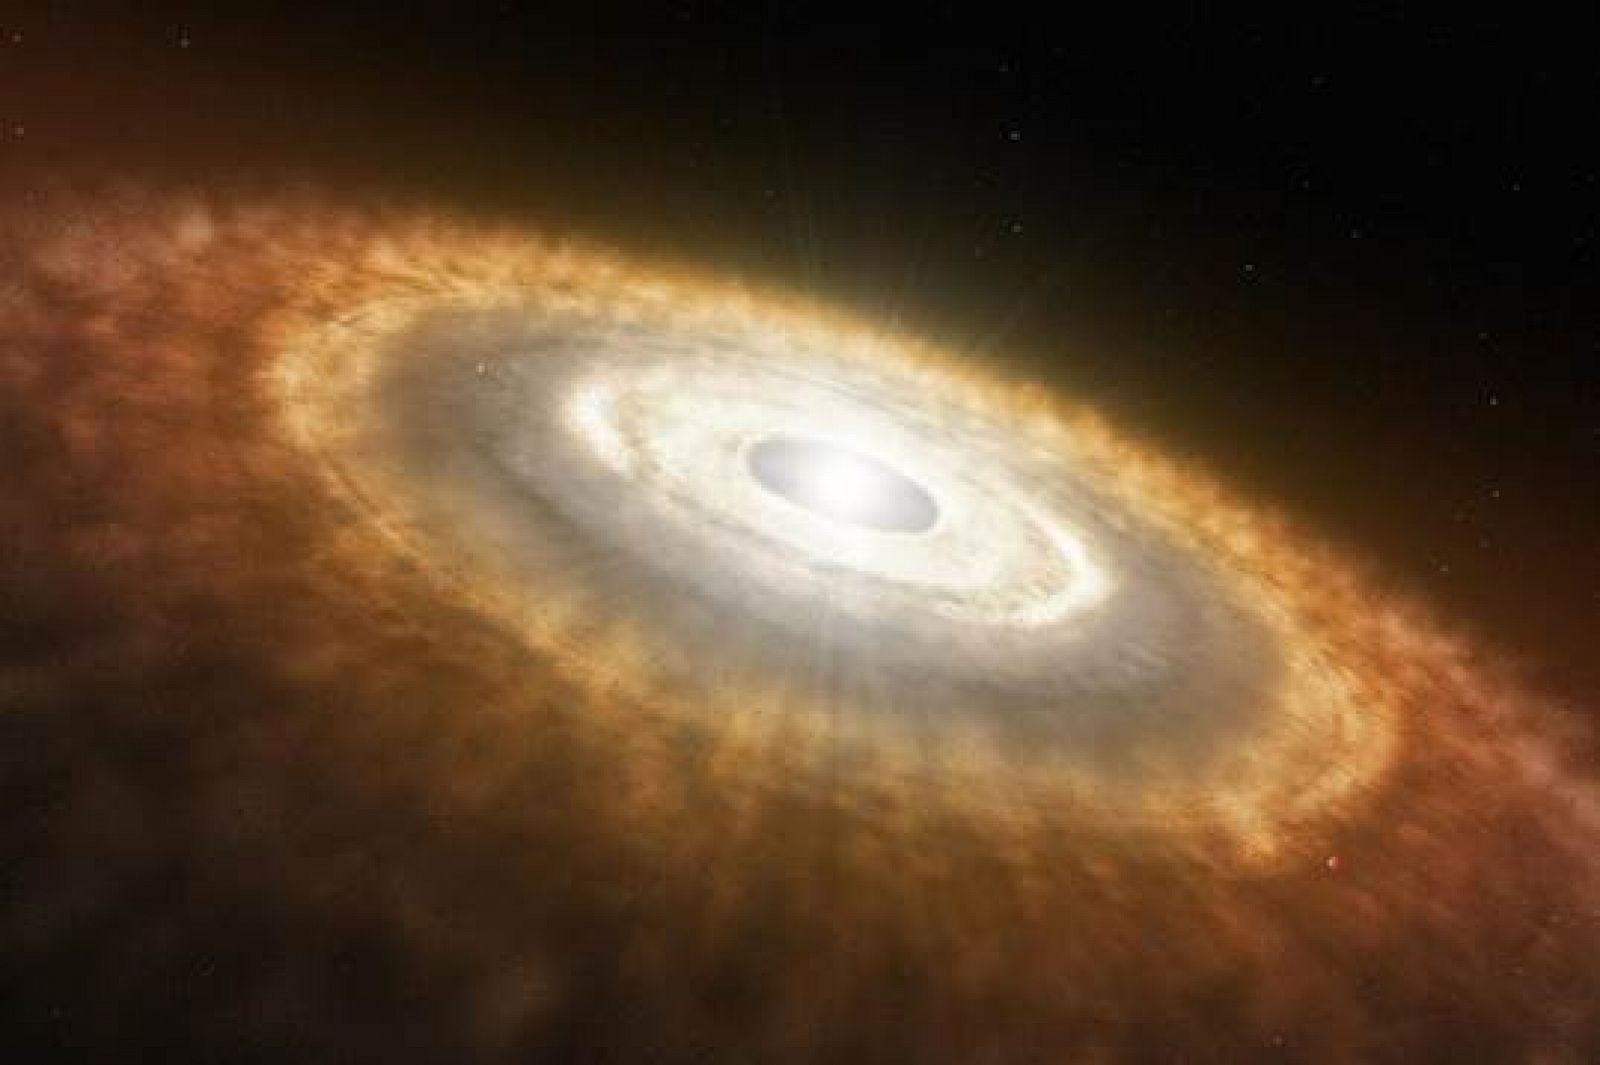  Disco protoplanetario en torno a una estrella joven